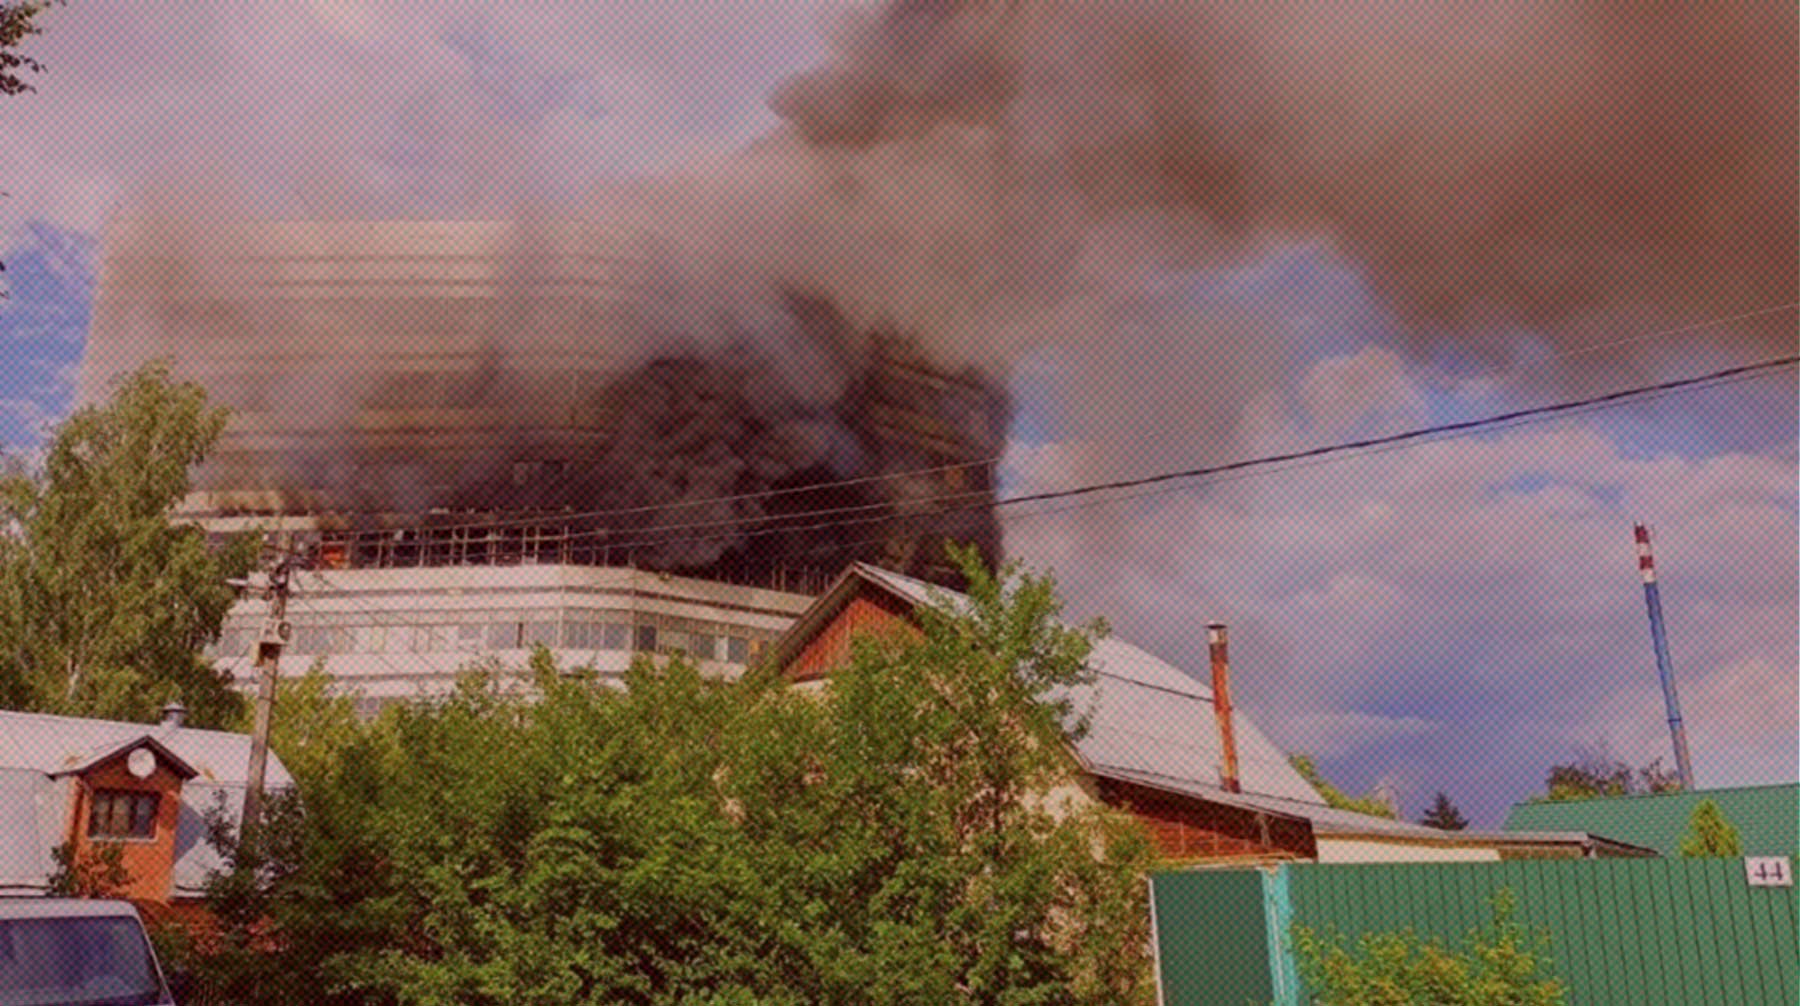 Dailystorm - Стекла взрываются, все в дыму: в Подмосковье загорелось здание НИИ «Платан», производящего радиокомпоненты